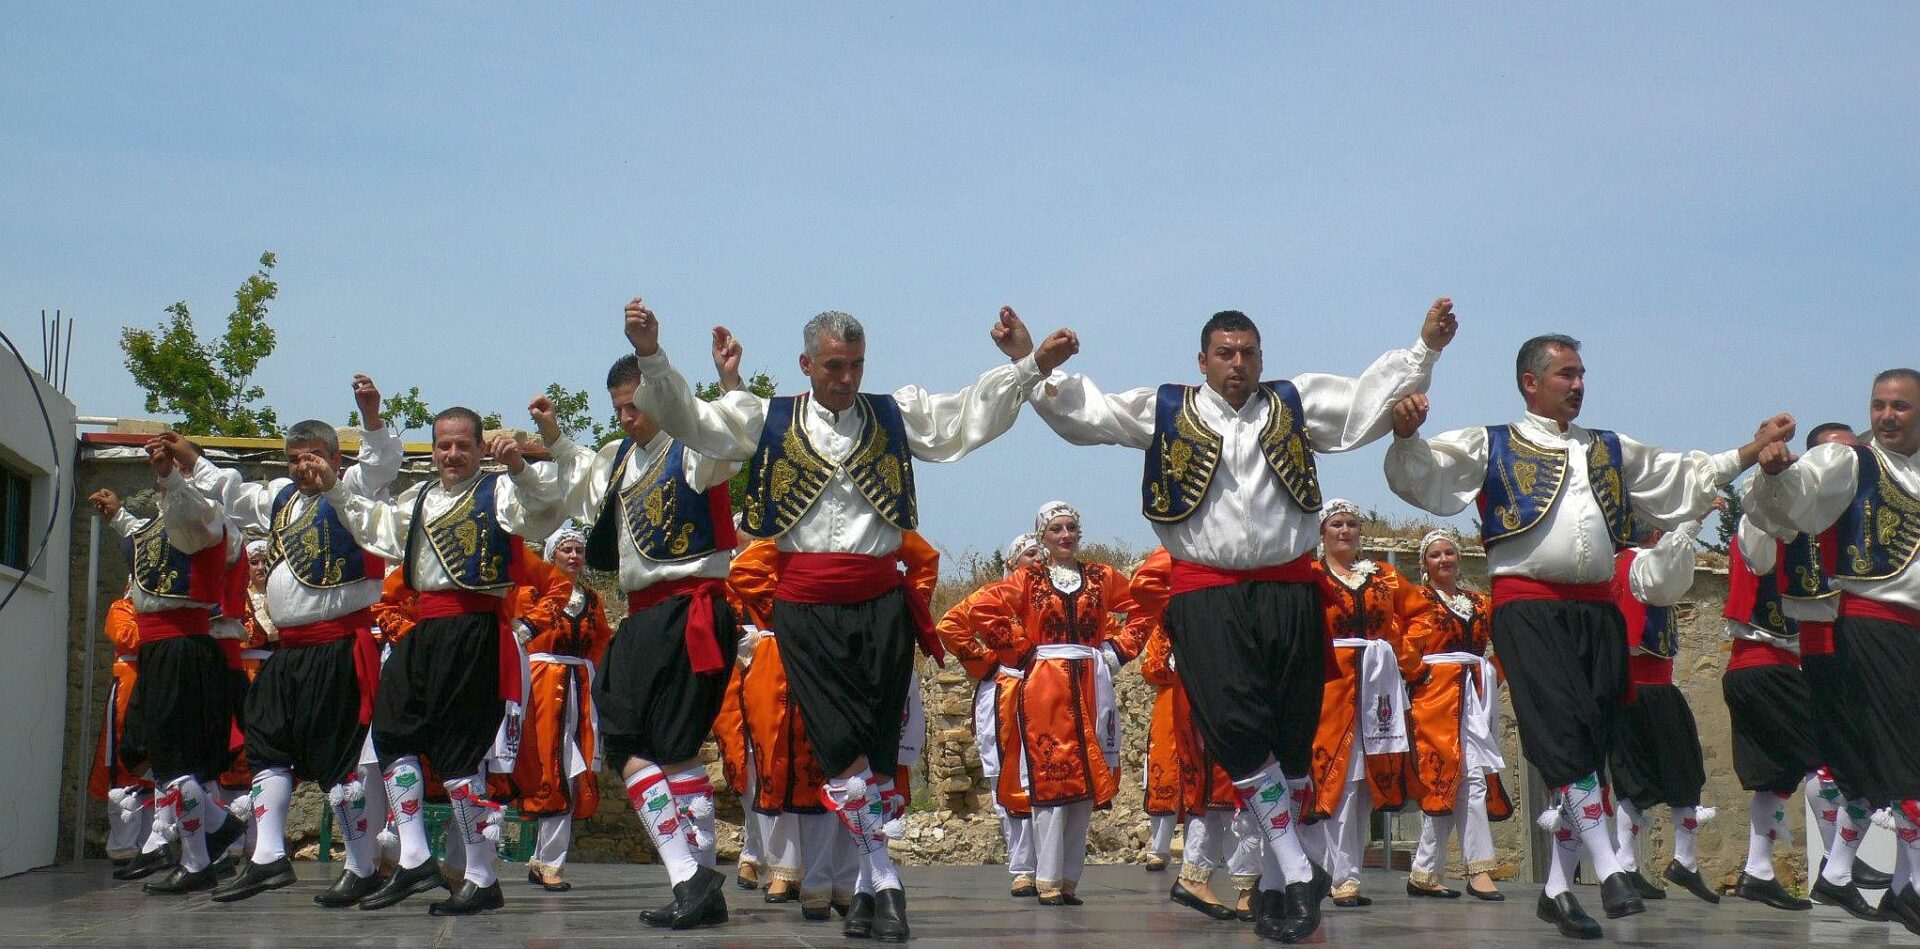 Celebrando la cultura: momentos festivos destacados del norte de Chipre